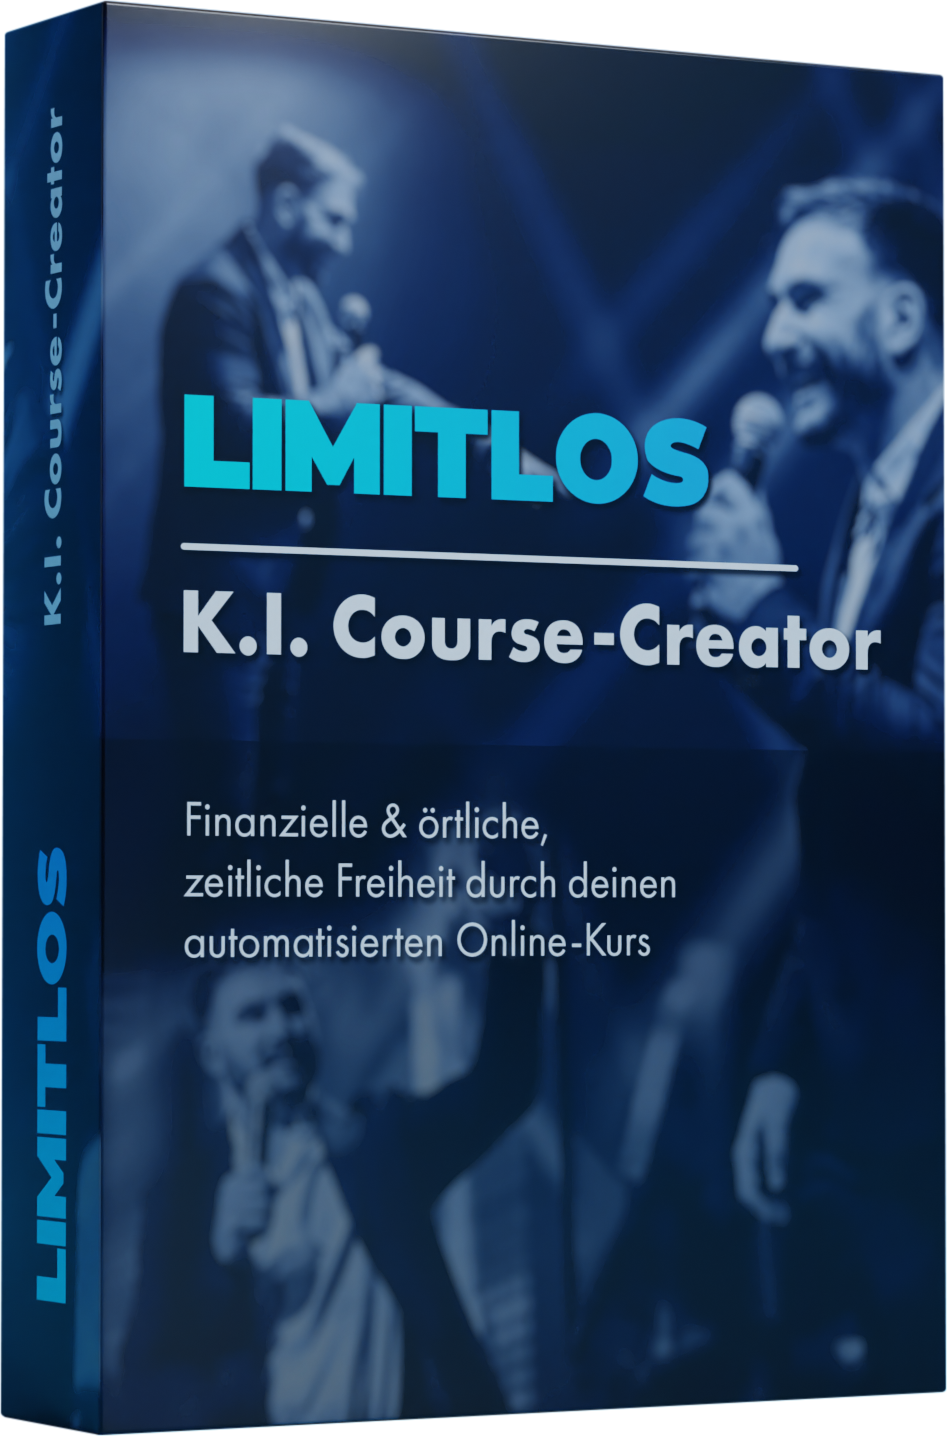 K.I. CourseCreator